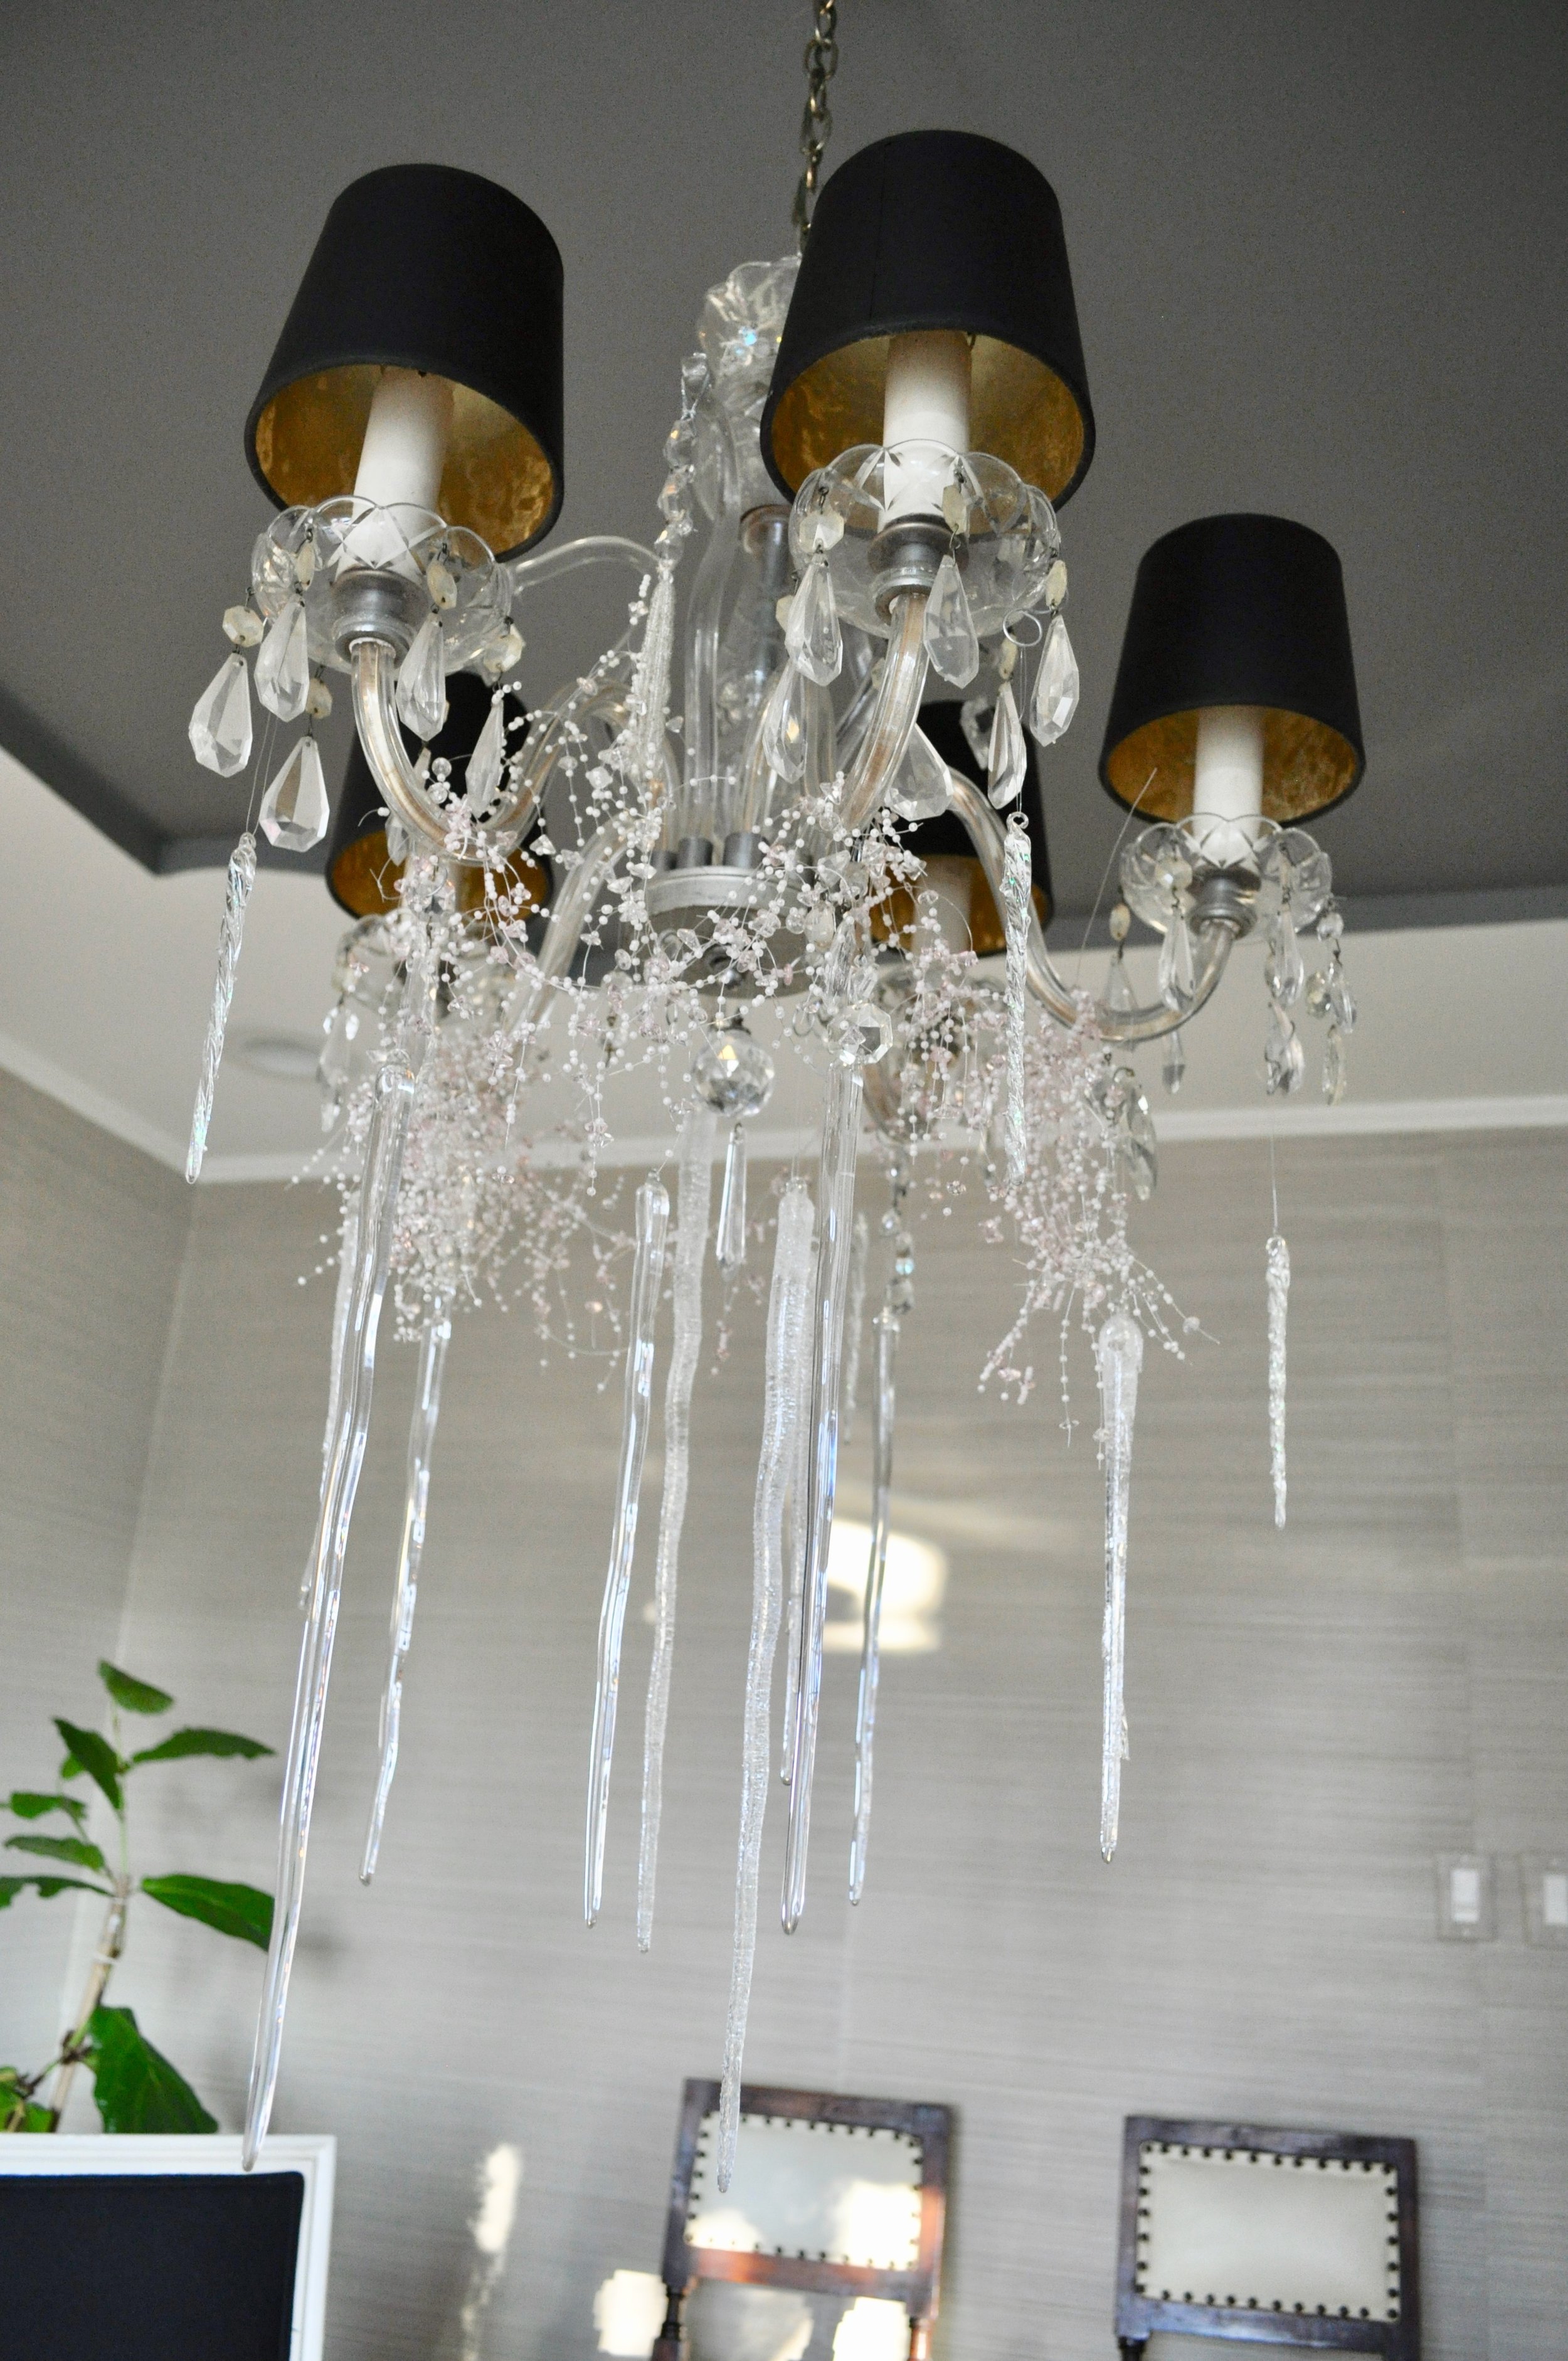 A frozen chandelier